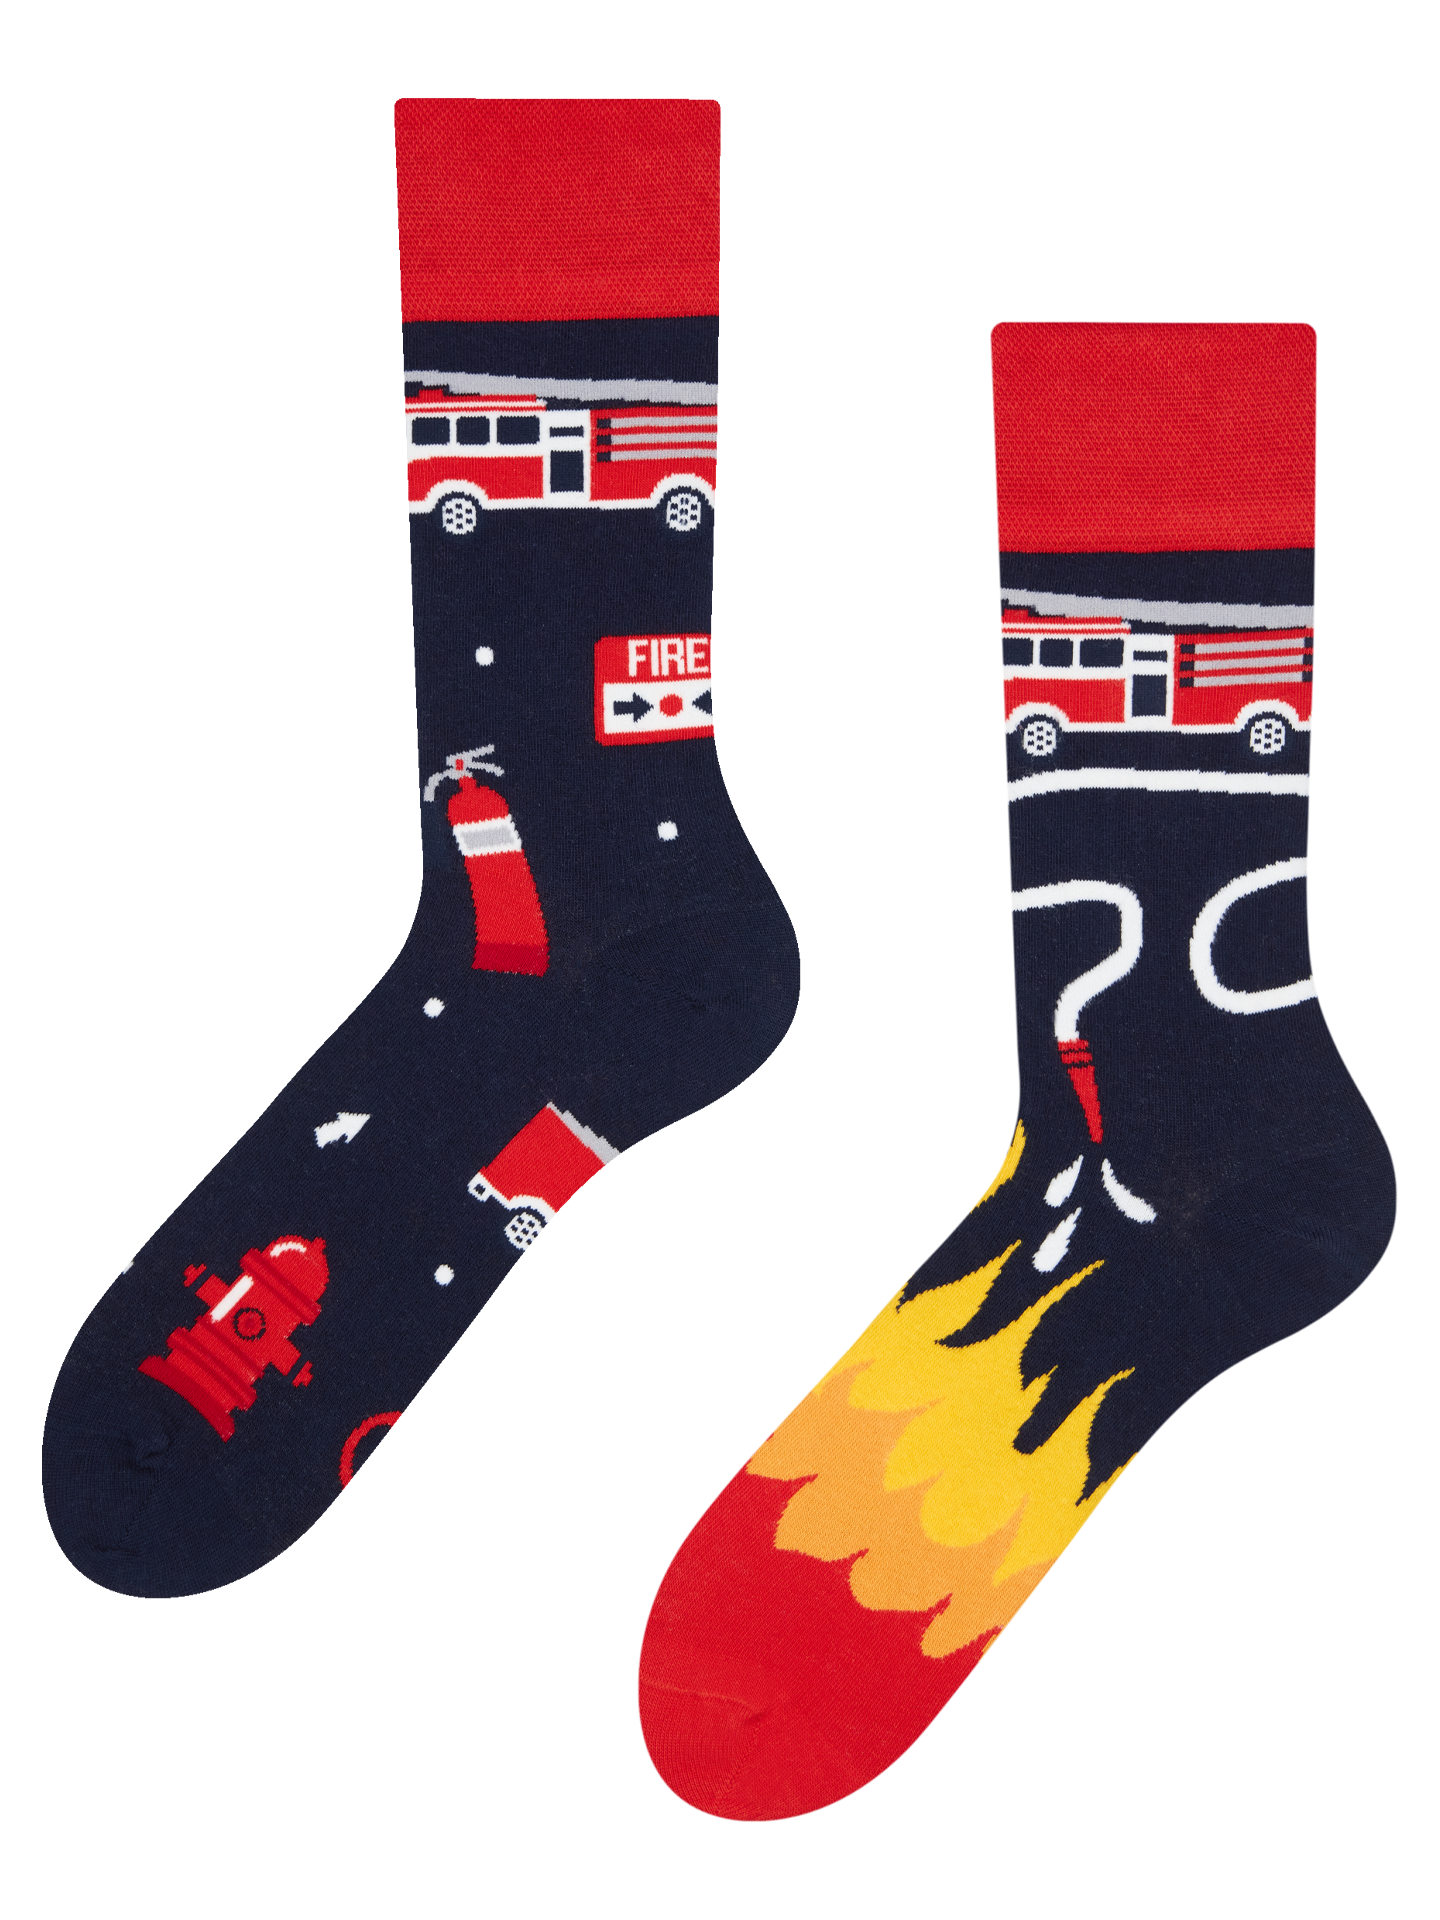 Regular Socks Firefighter